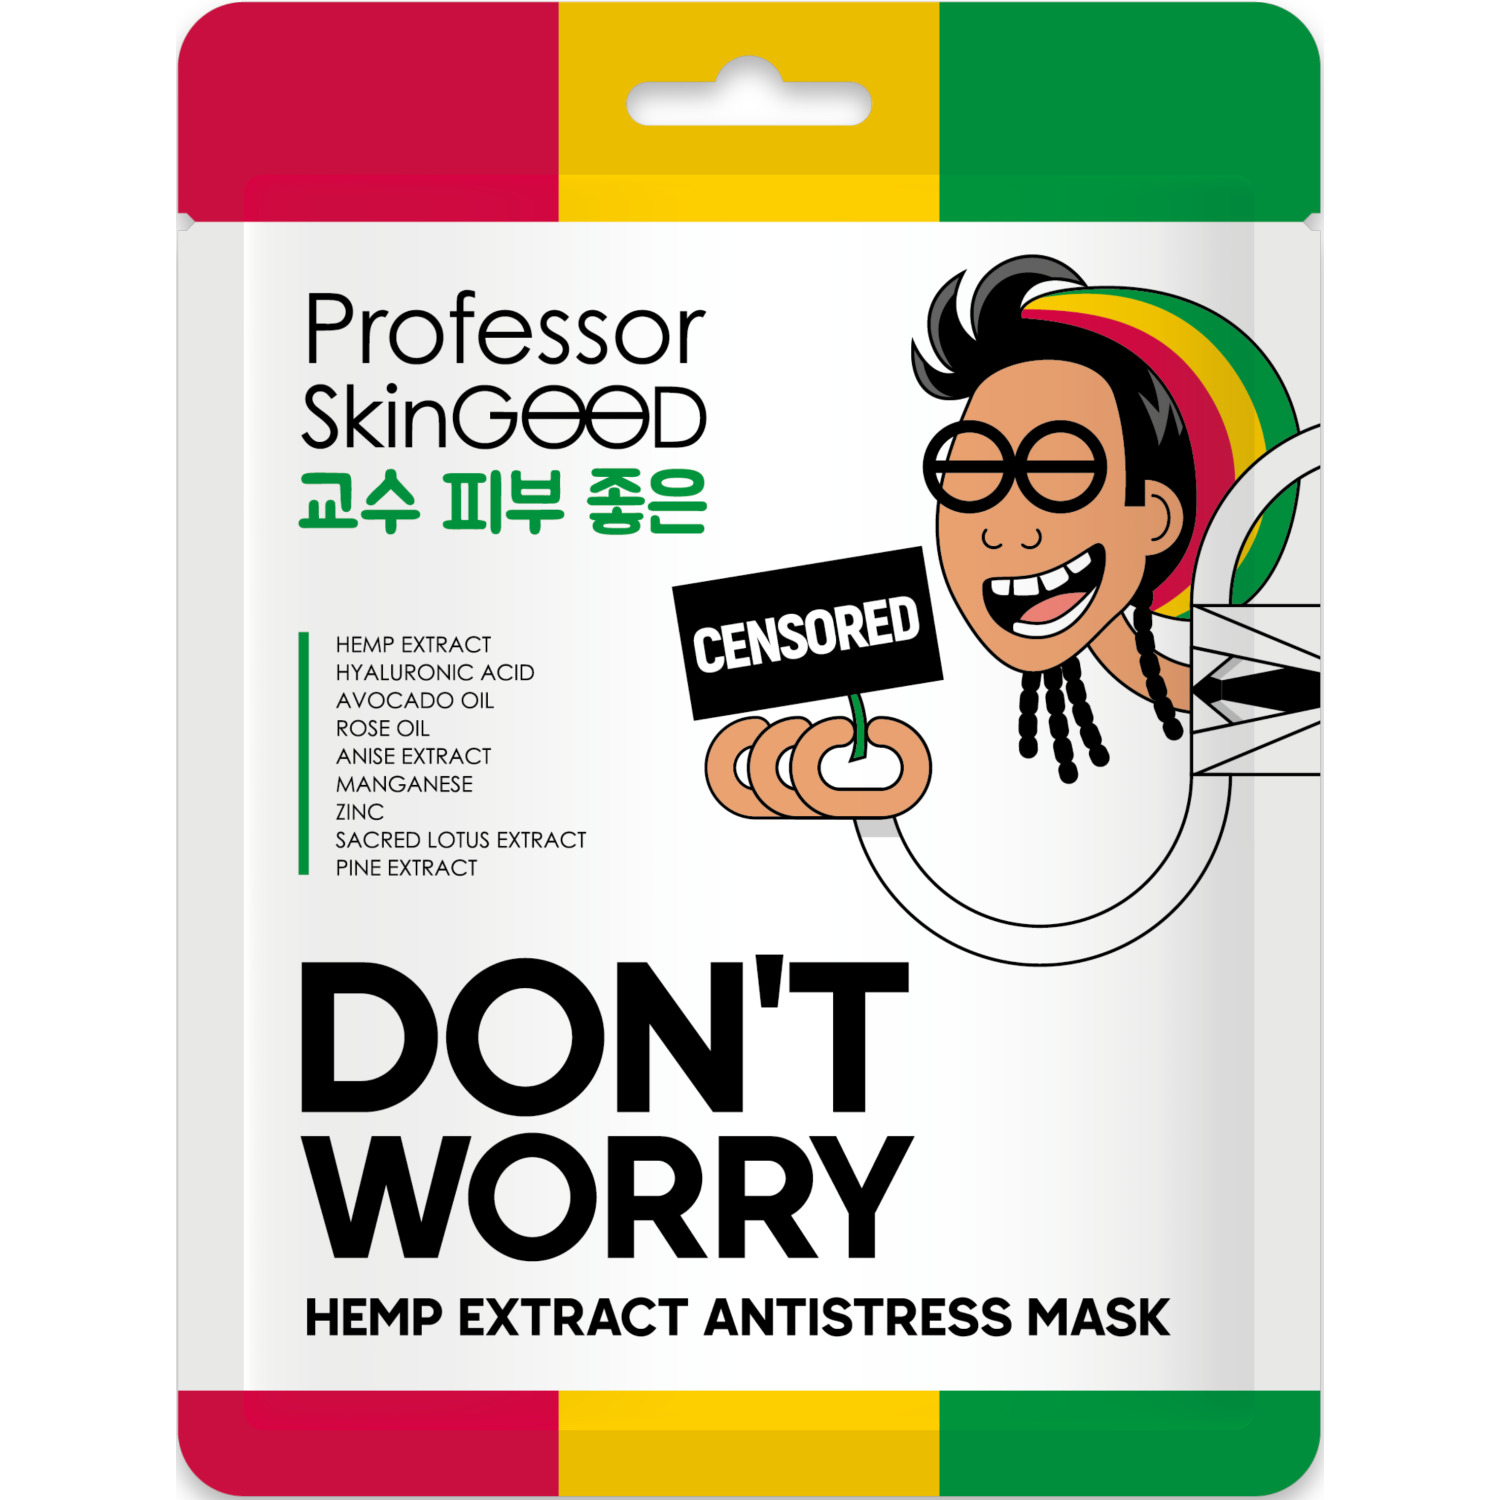 Маска для лица Professor SkinGOOD Hemp Extract Antistress Mask с экстрактом конопли, 25 мл сыворотка c гиалуроновой кислотой professor skingood 30 мл